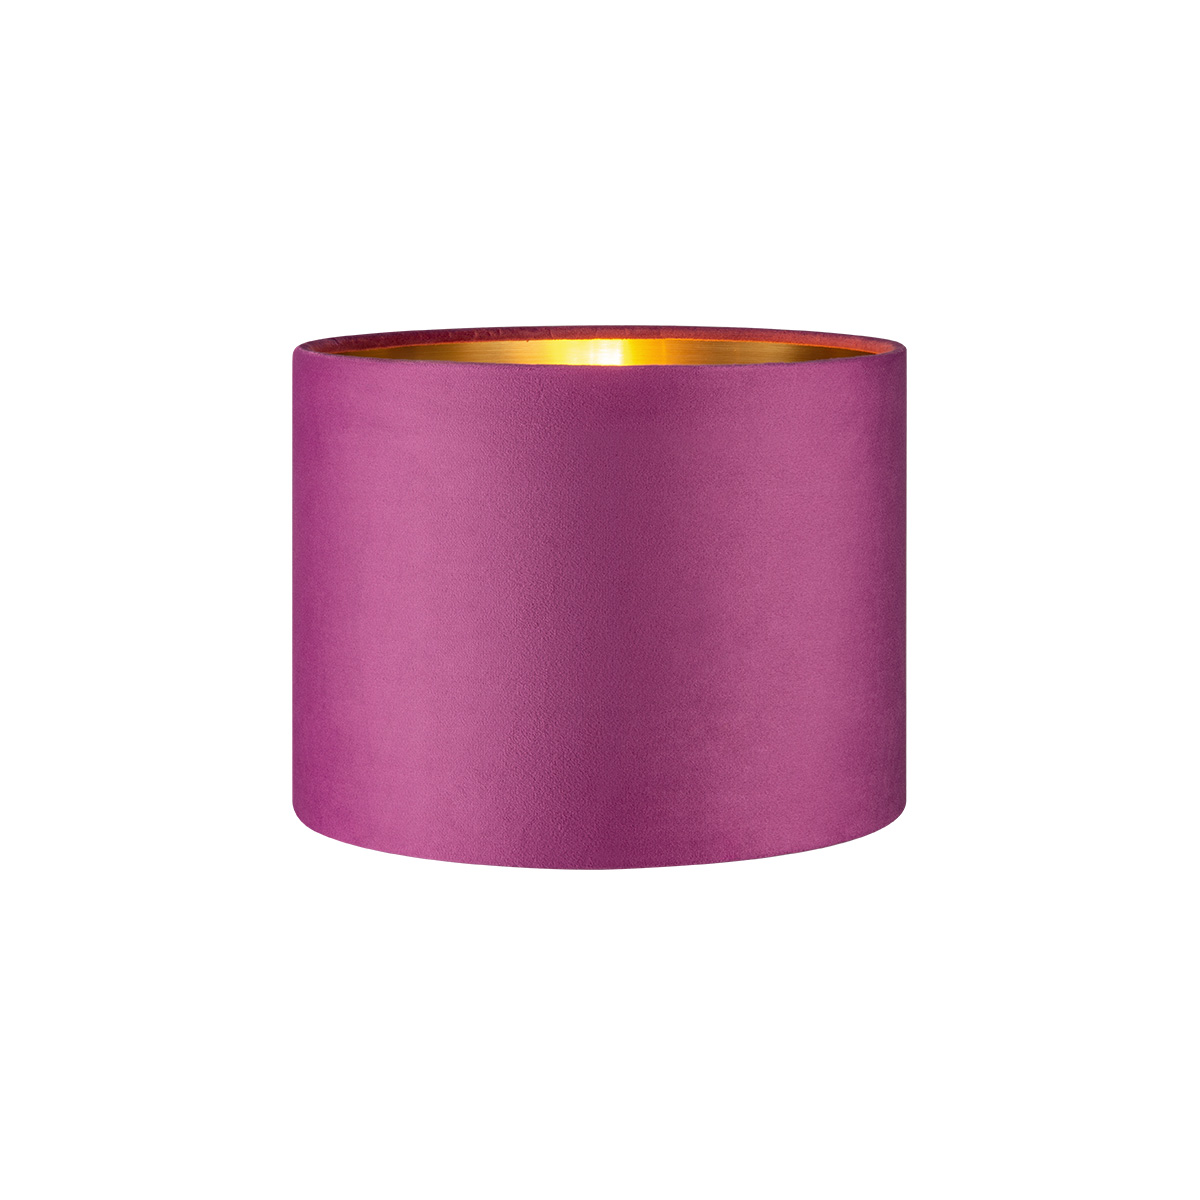 Tangla lighting - TLS7564-25PP - Lampshade - velvet - purple - diameter 25cm - E27